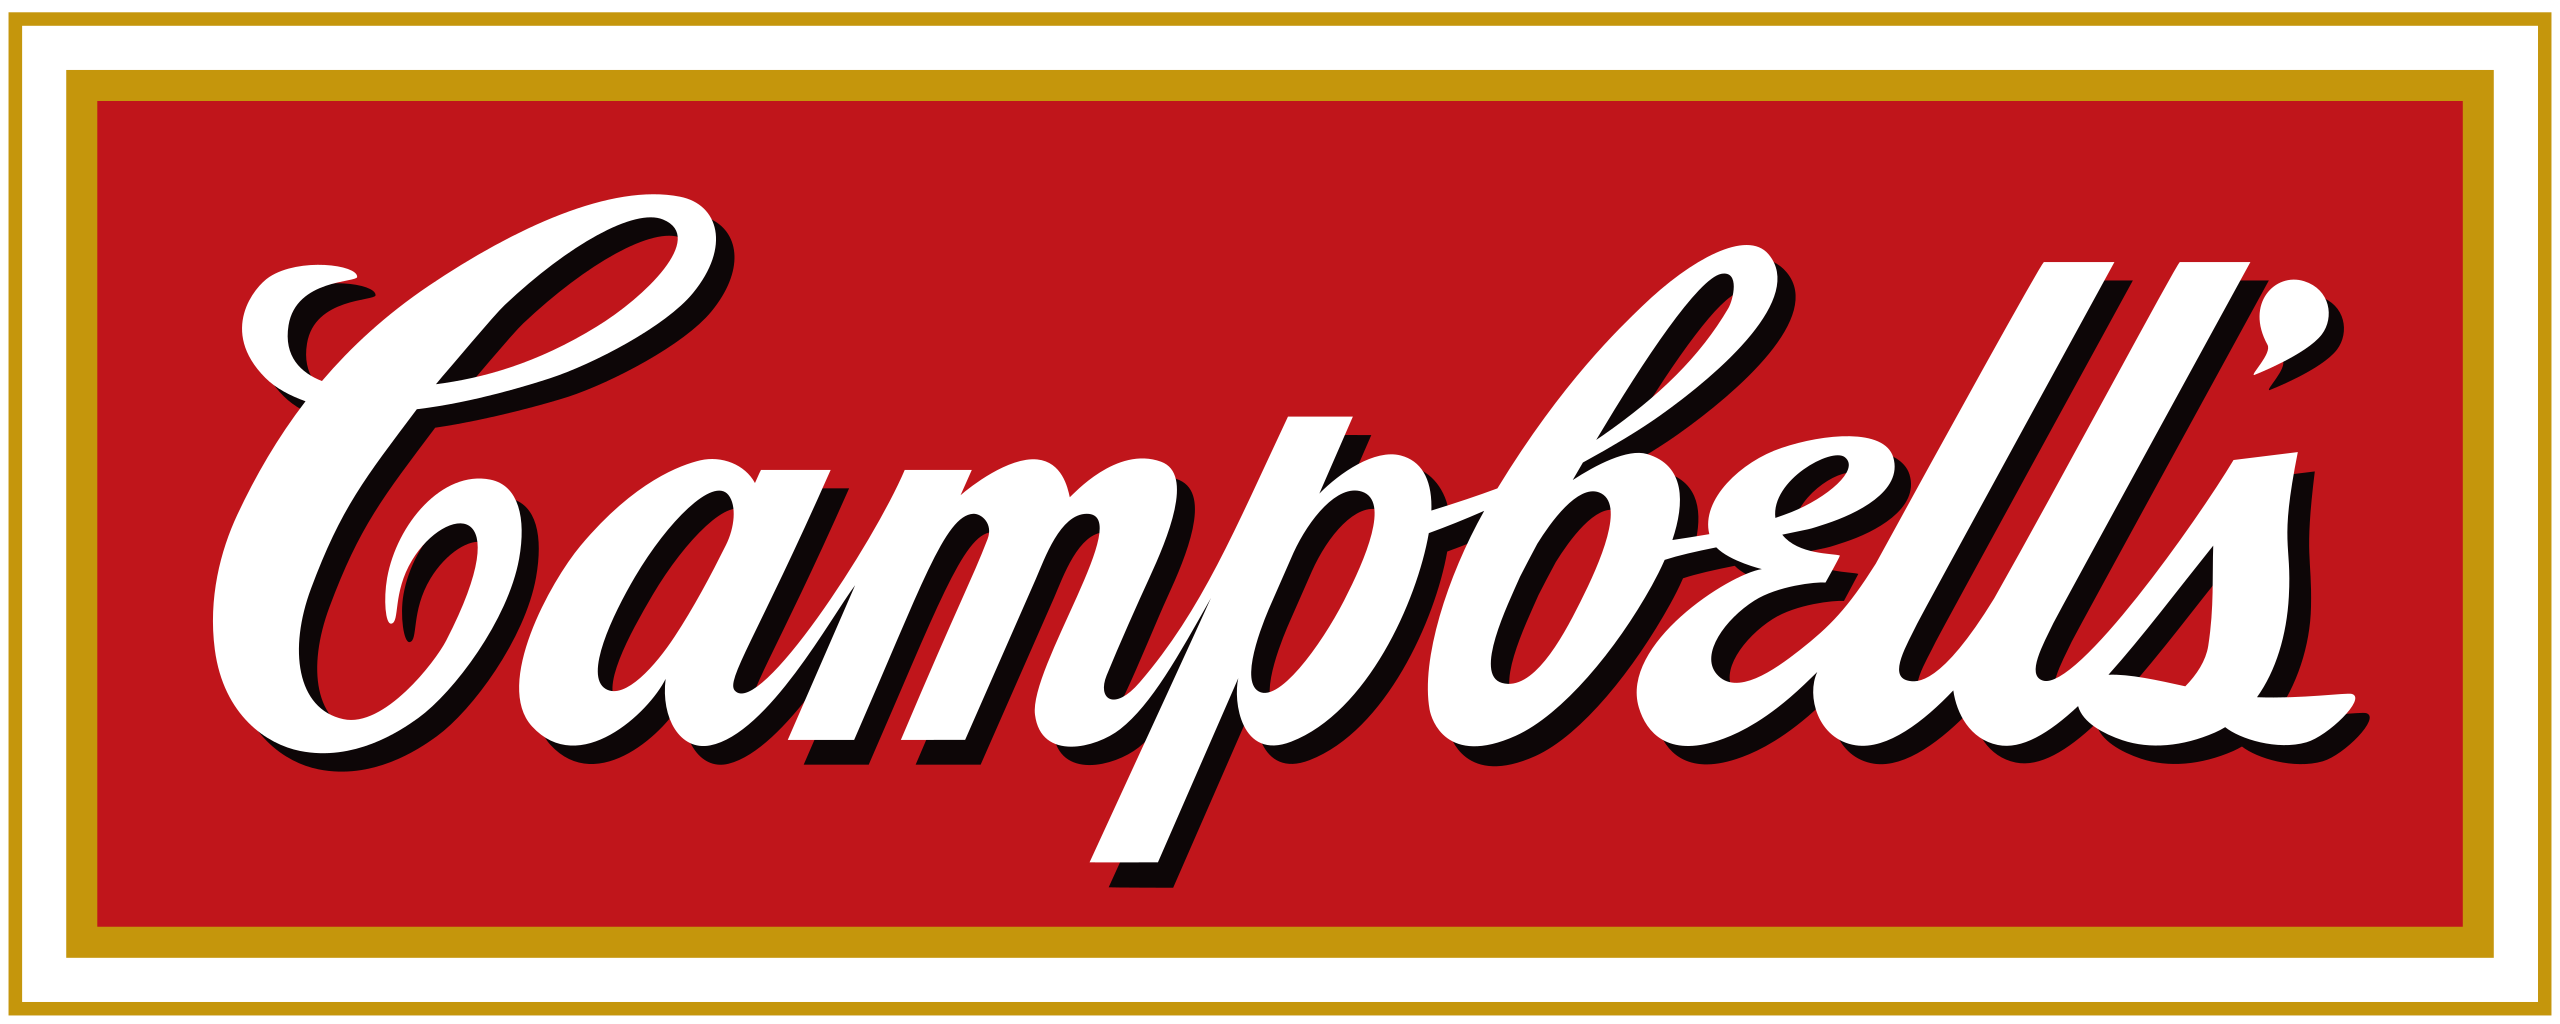 Campbell_Soup_Company_logo.svg